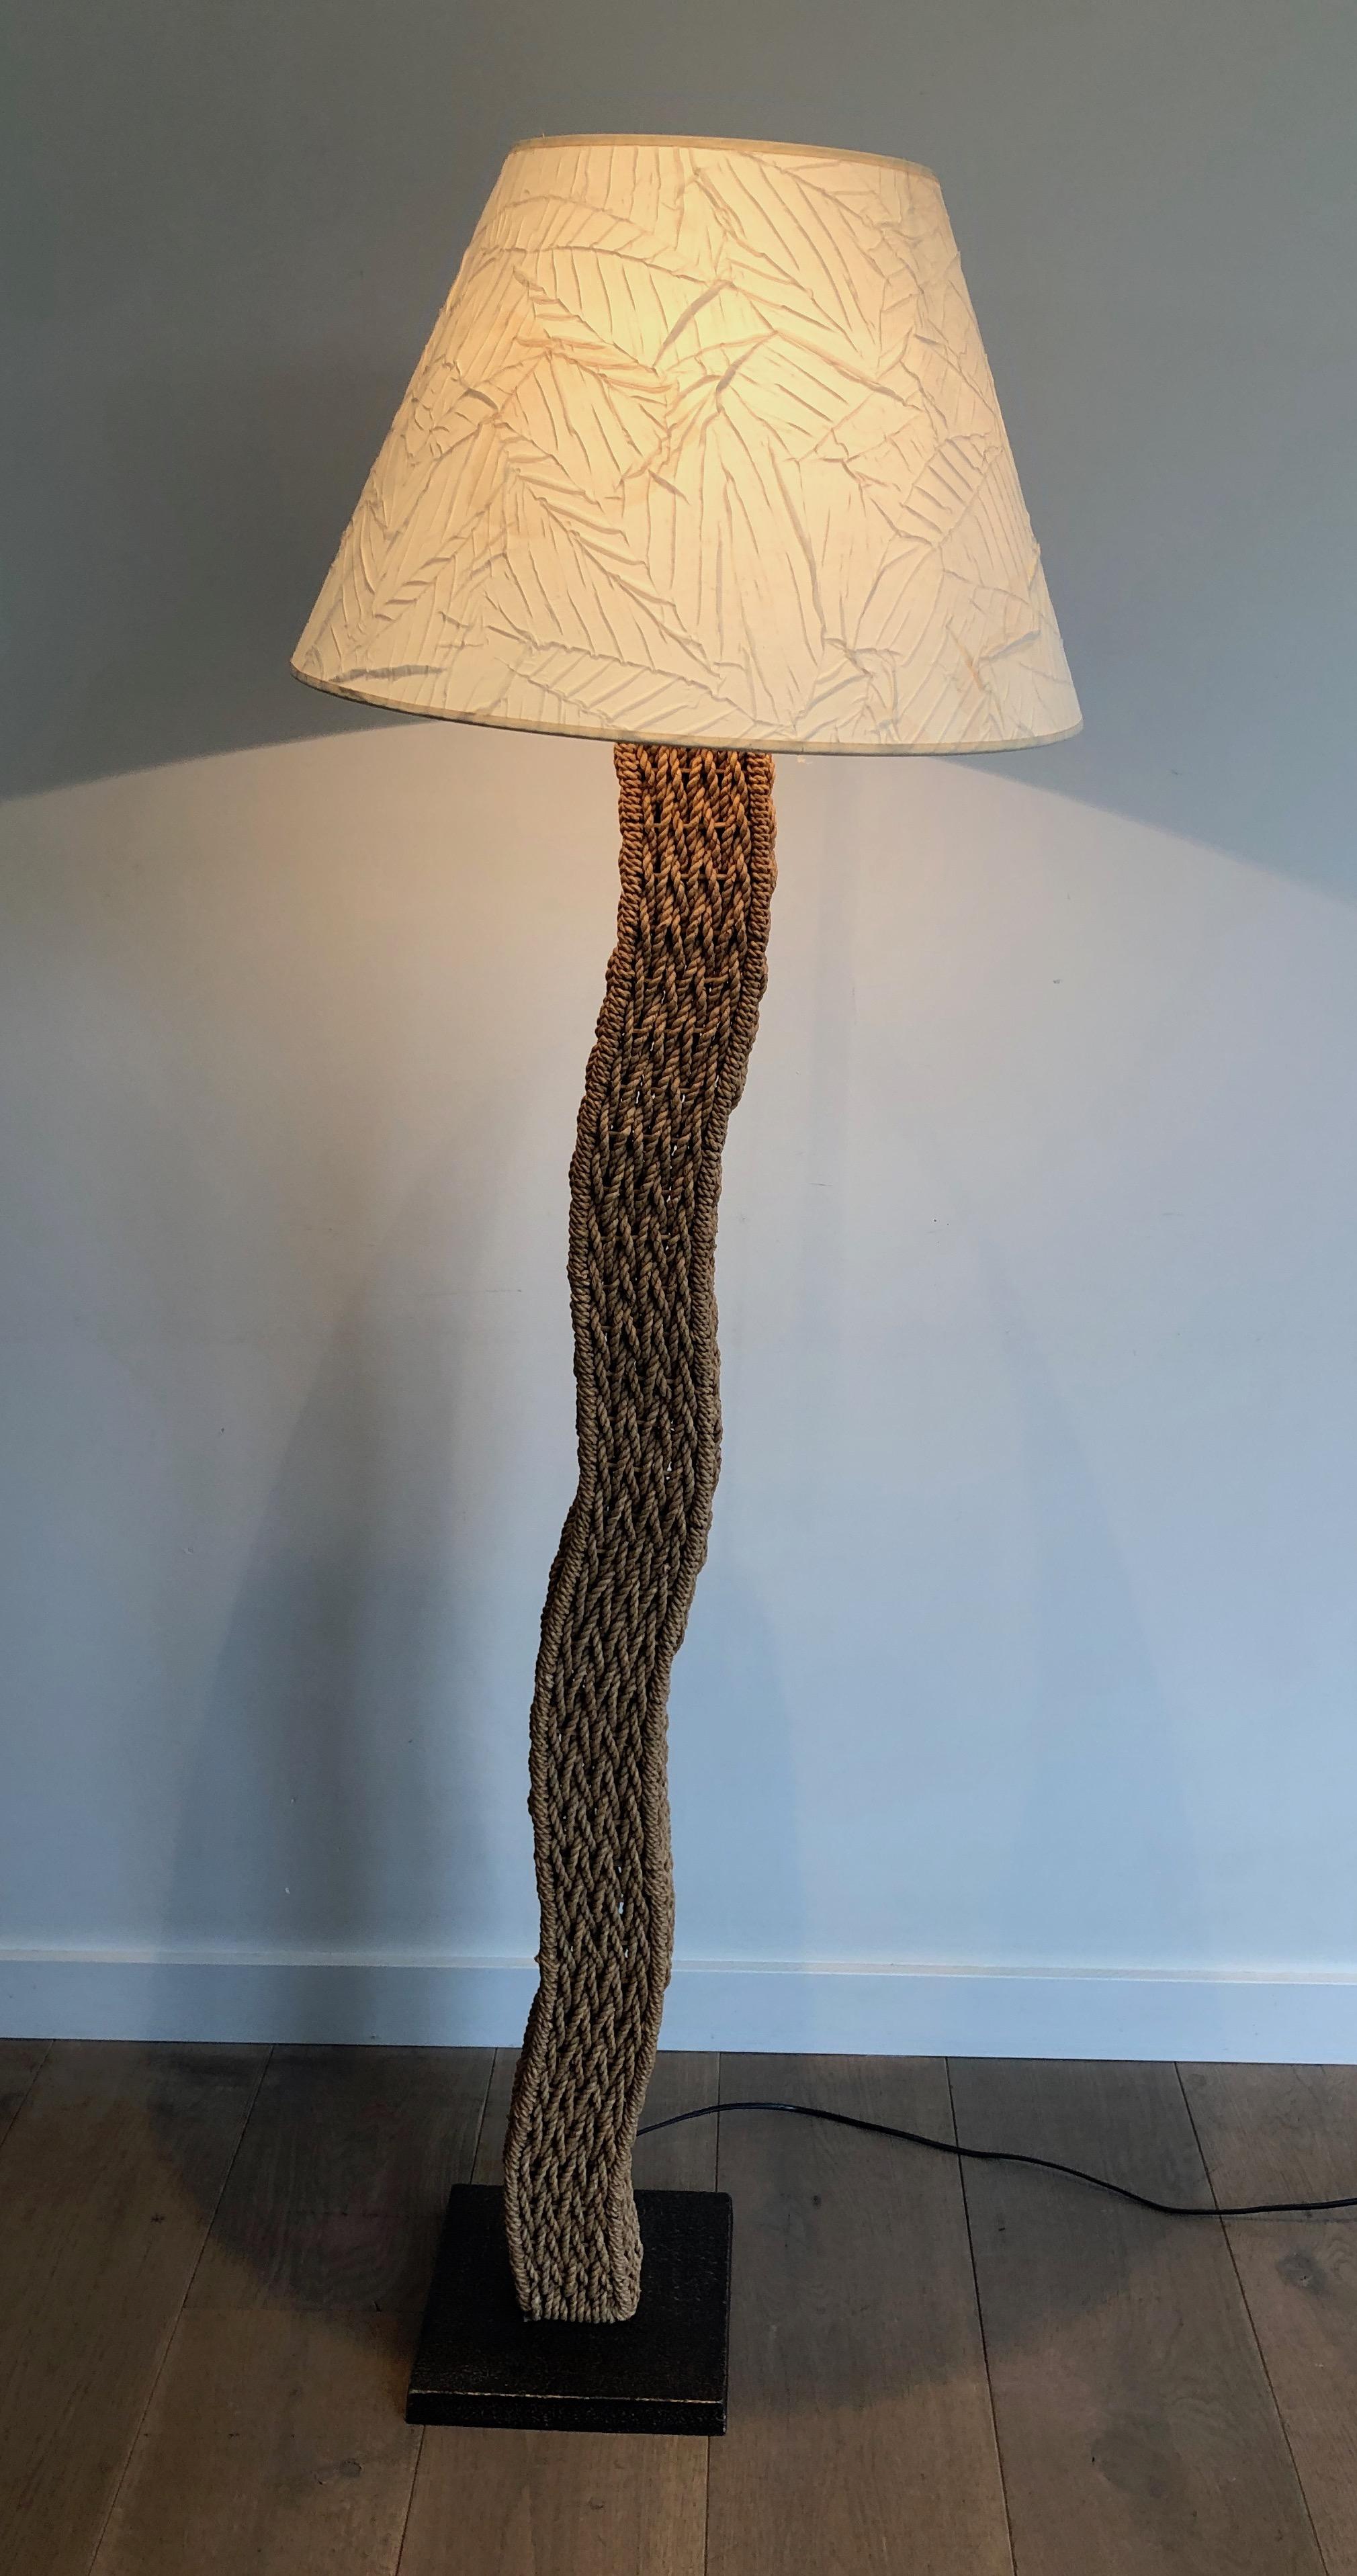 Ce très beau lampadaire design est réalisé en corde sur une base métallique carrée. Il s'agit d'une œuvre japonaise réalisée par Tarogo. Circa 1980